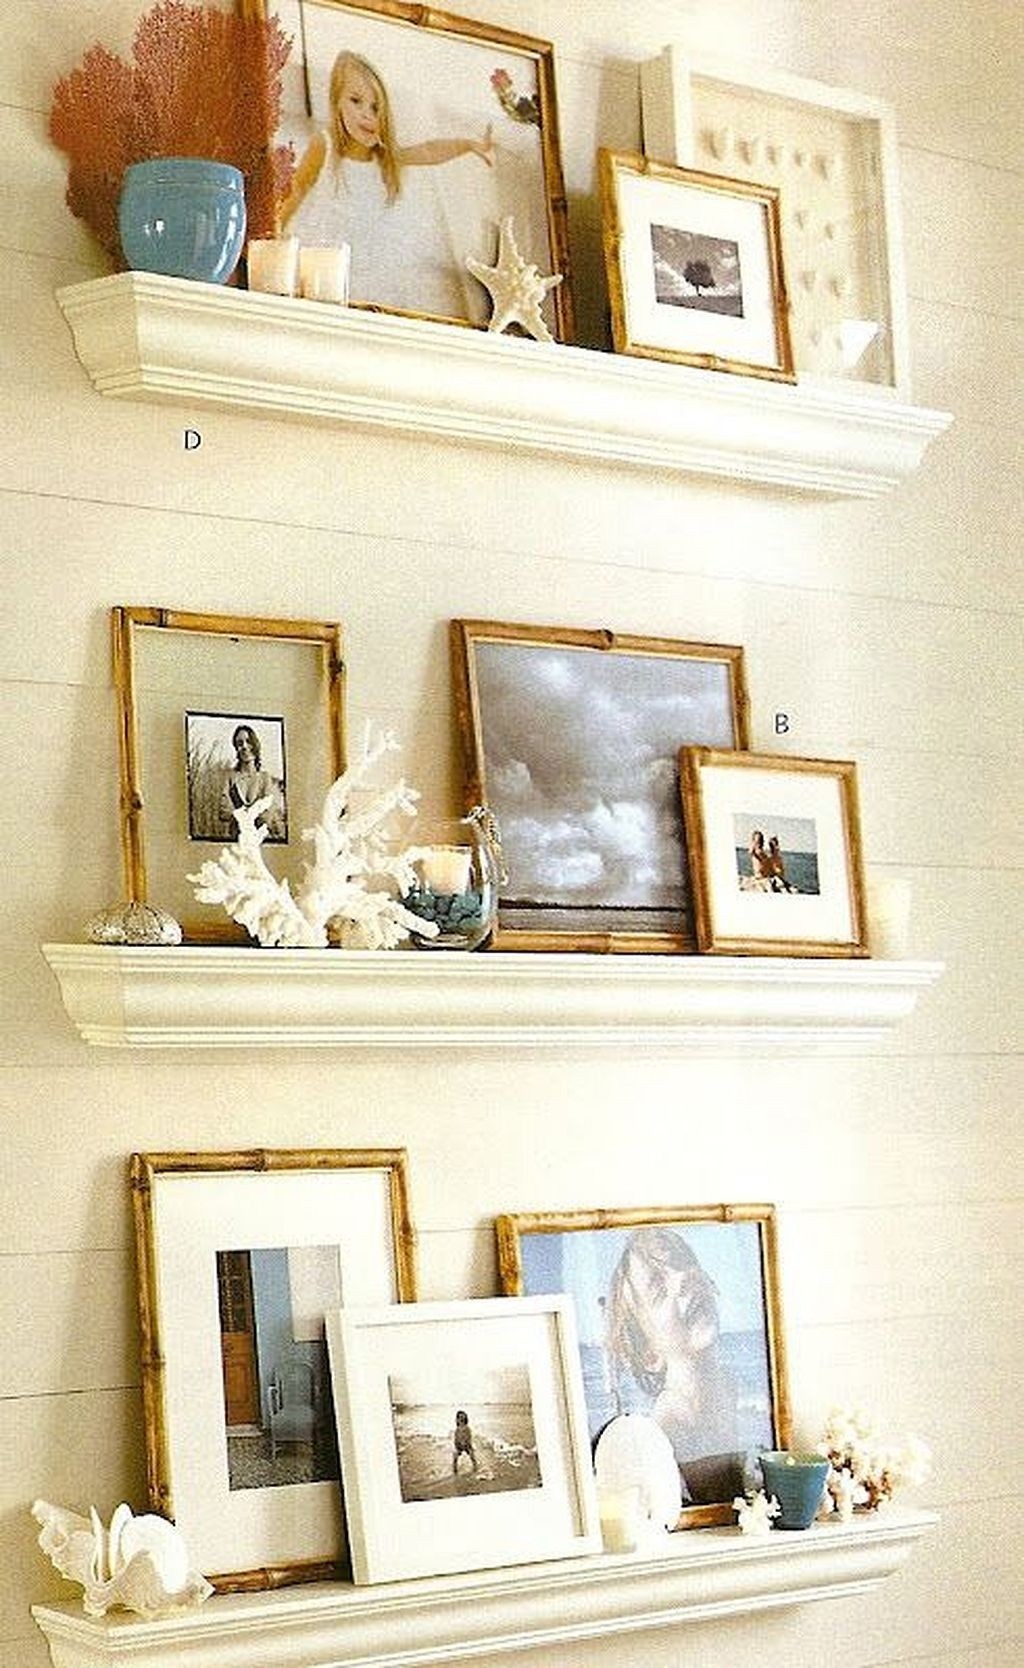 Shelves in living room